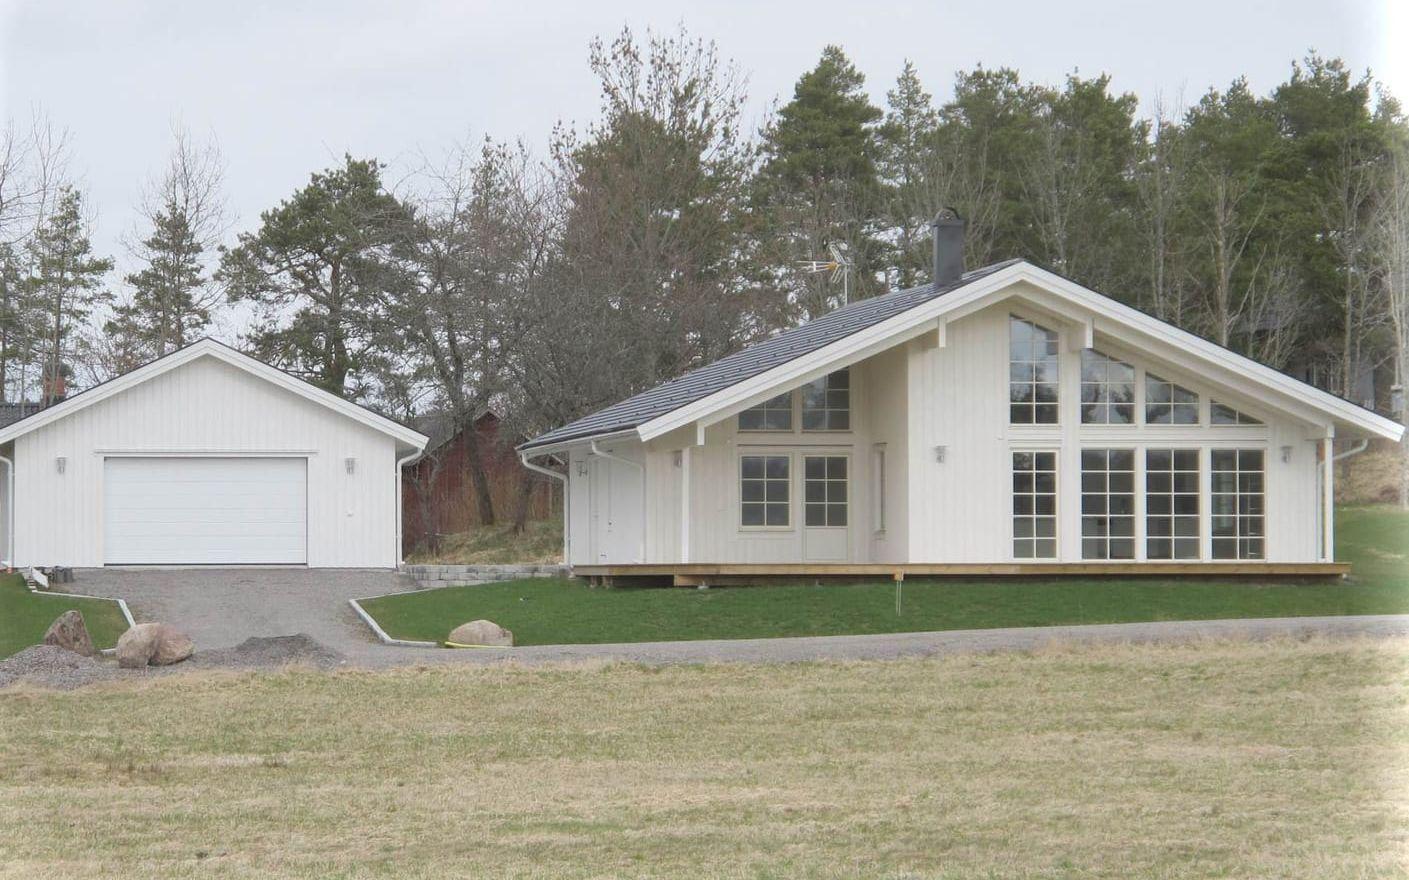 150 kvadratmeter stor är den här villan i närheten av Sunnanå i Mellerud. Bild: Mellerudsmäklarna